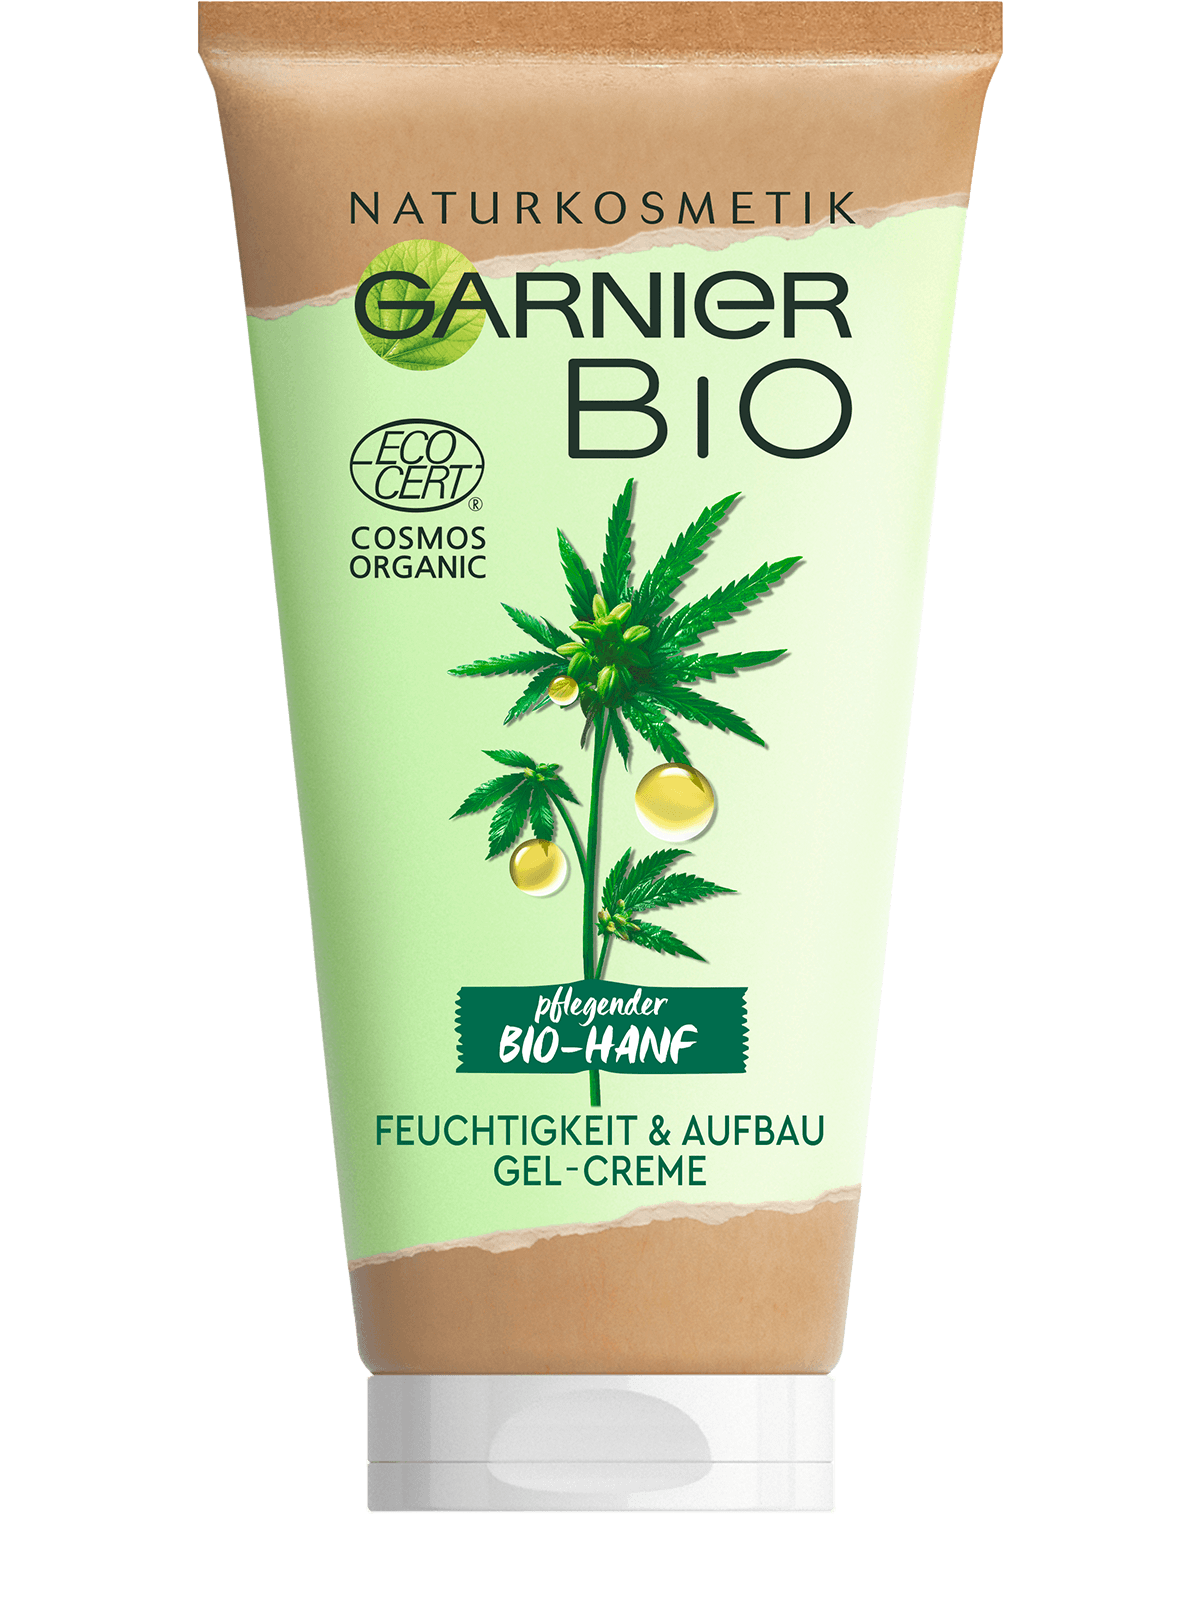 Garnier Bio-Hanf Feuchtigkeit & Aufbau Gel-Creme Produktbild